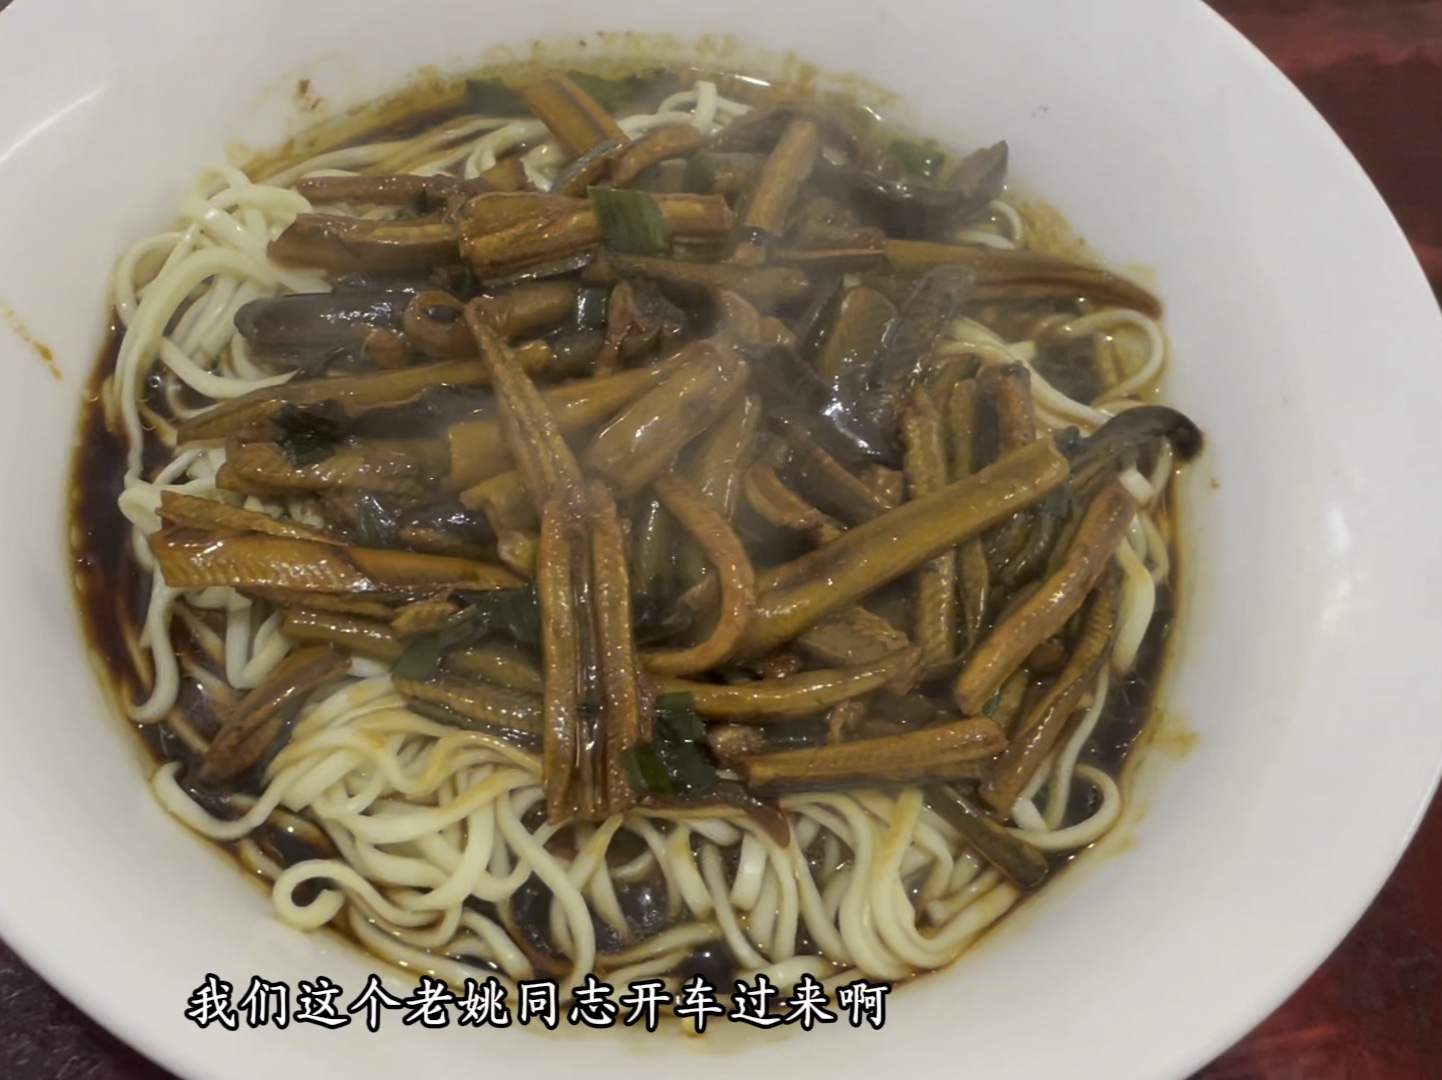 上海郊区开了30多年小面馆 一碗鳝丝面绝对惊艳！